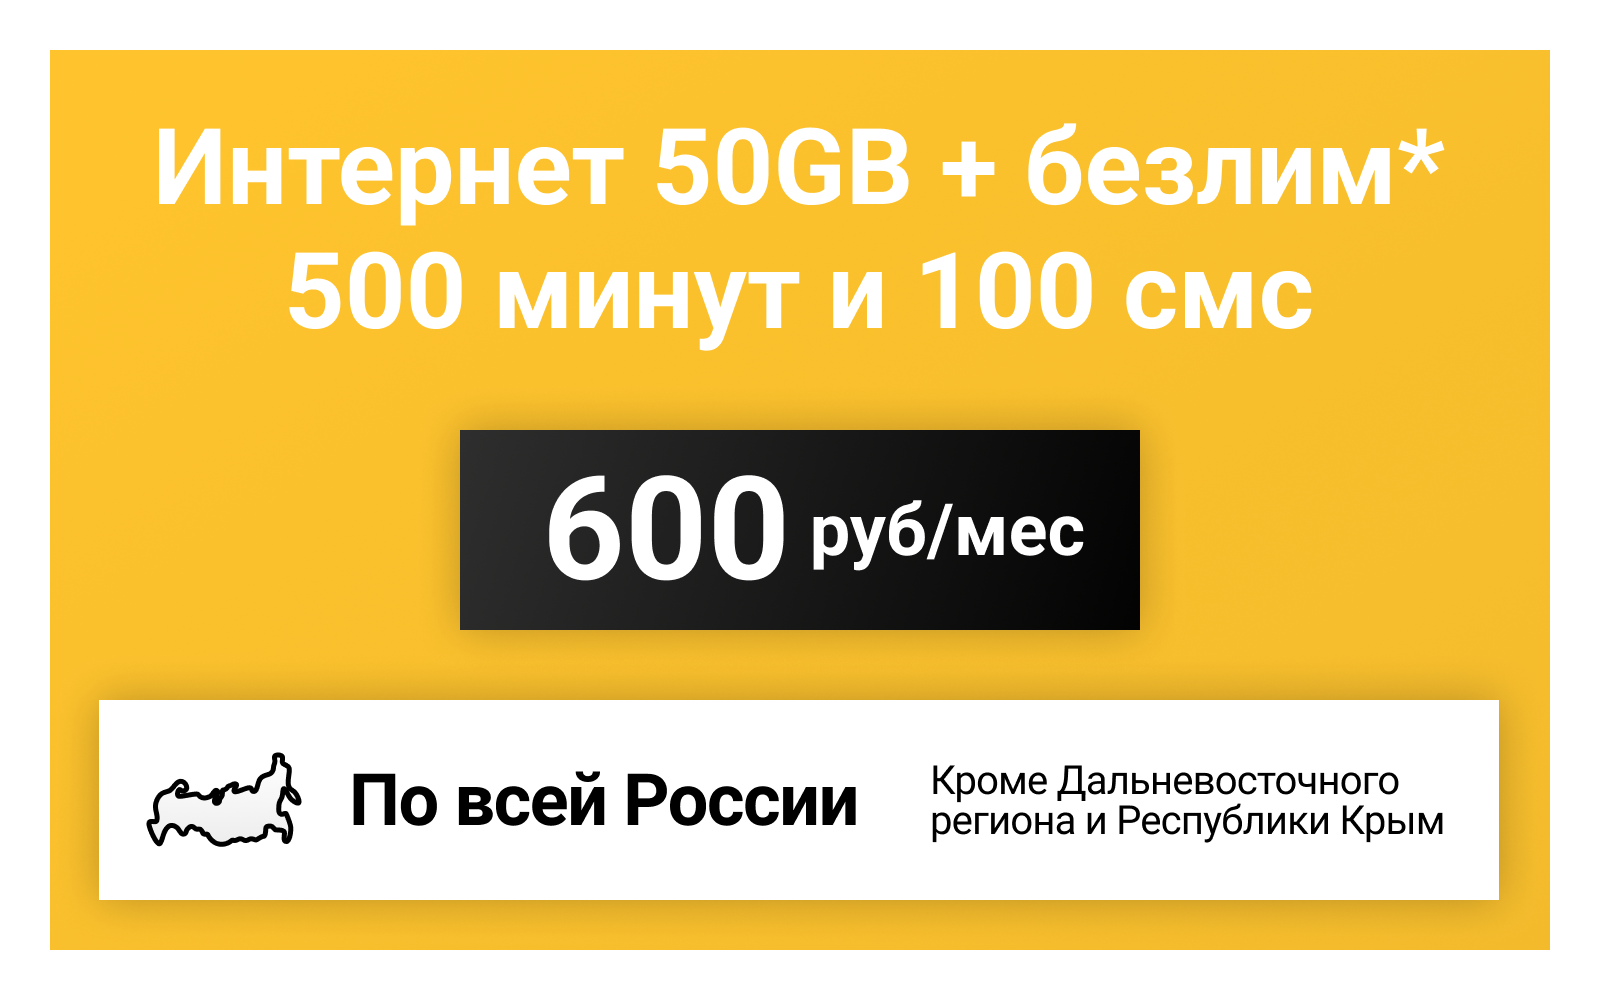 Сим-карта / 500 минут + 100 смс + 30GB + безлимит на мессенджеры - 600 р/мес, тариф для смартфона (Вся Россия)